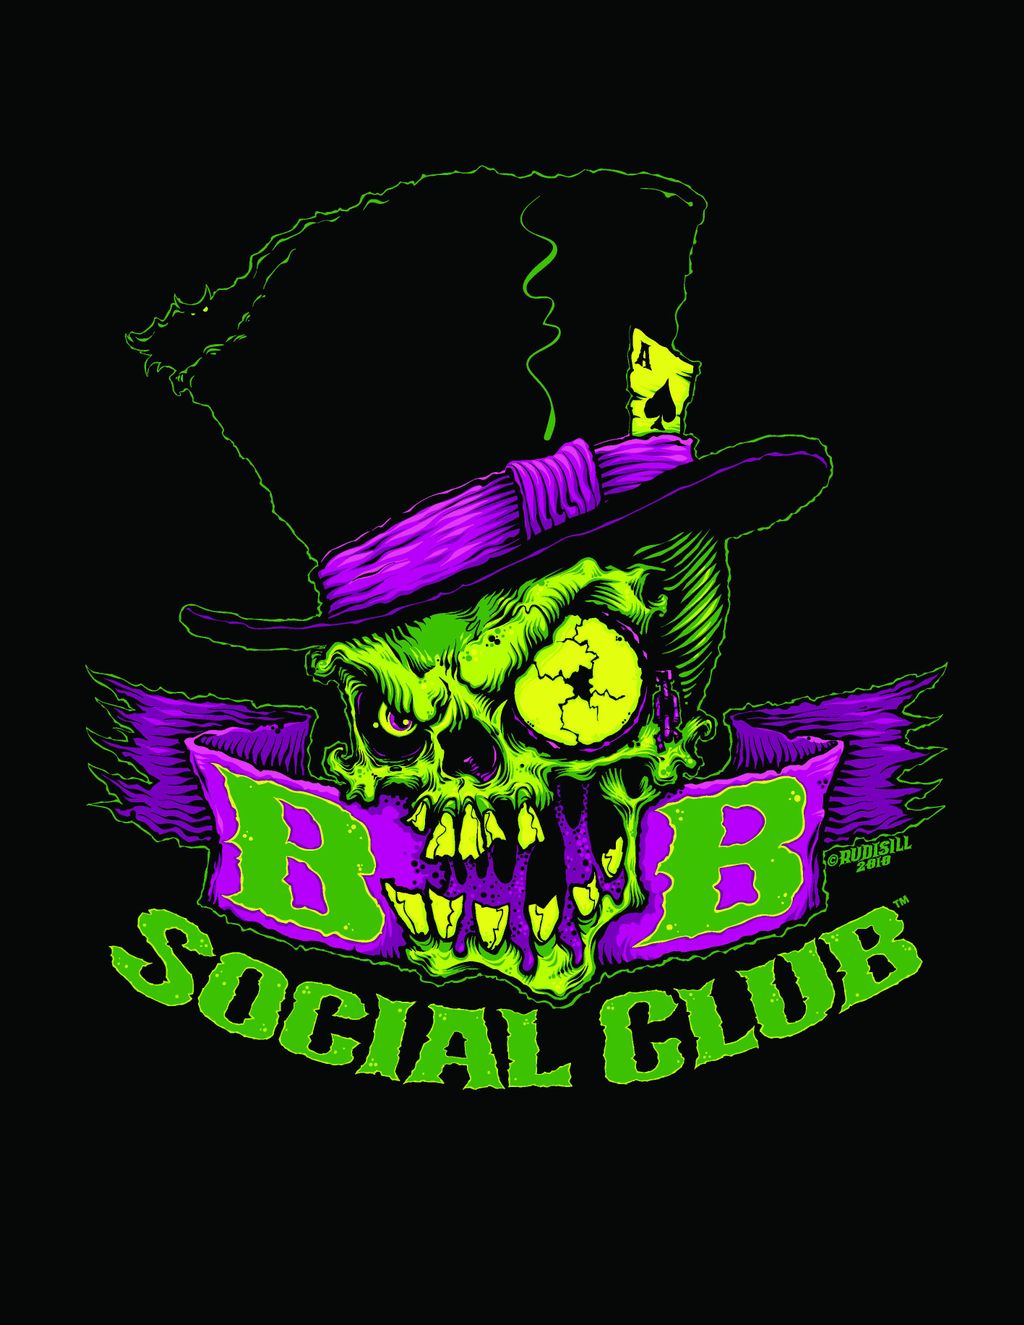 BB Social Club